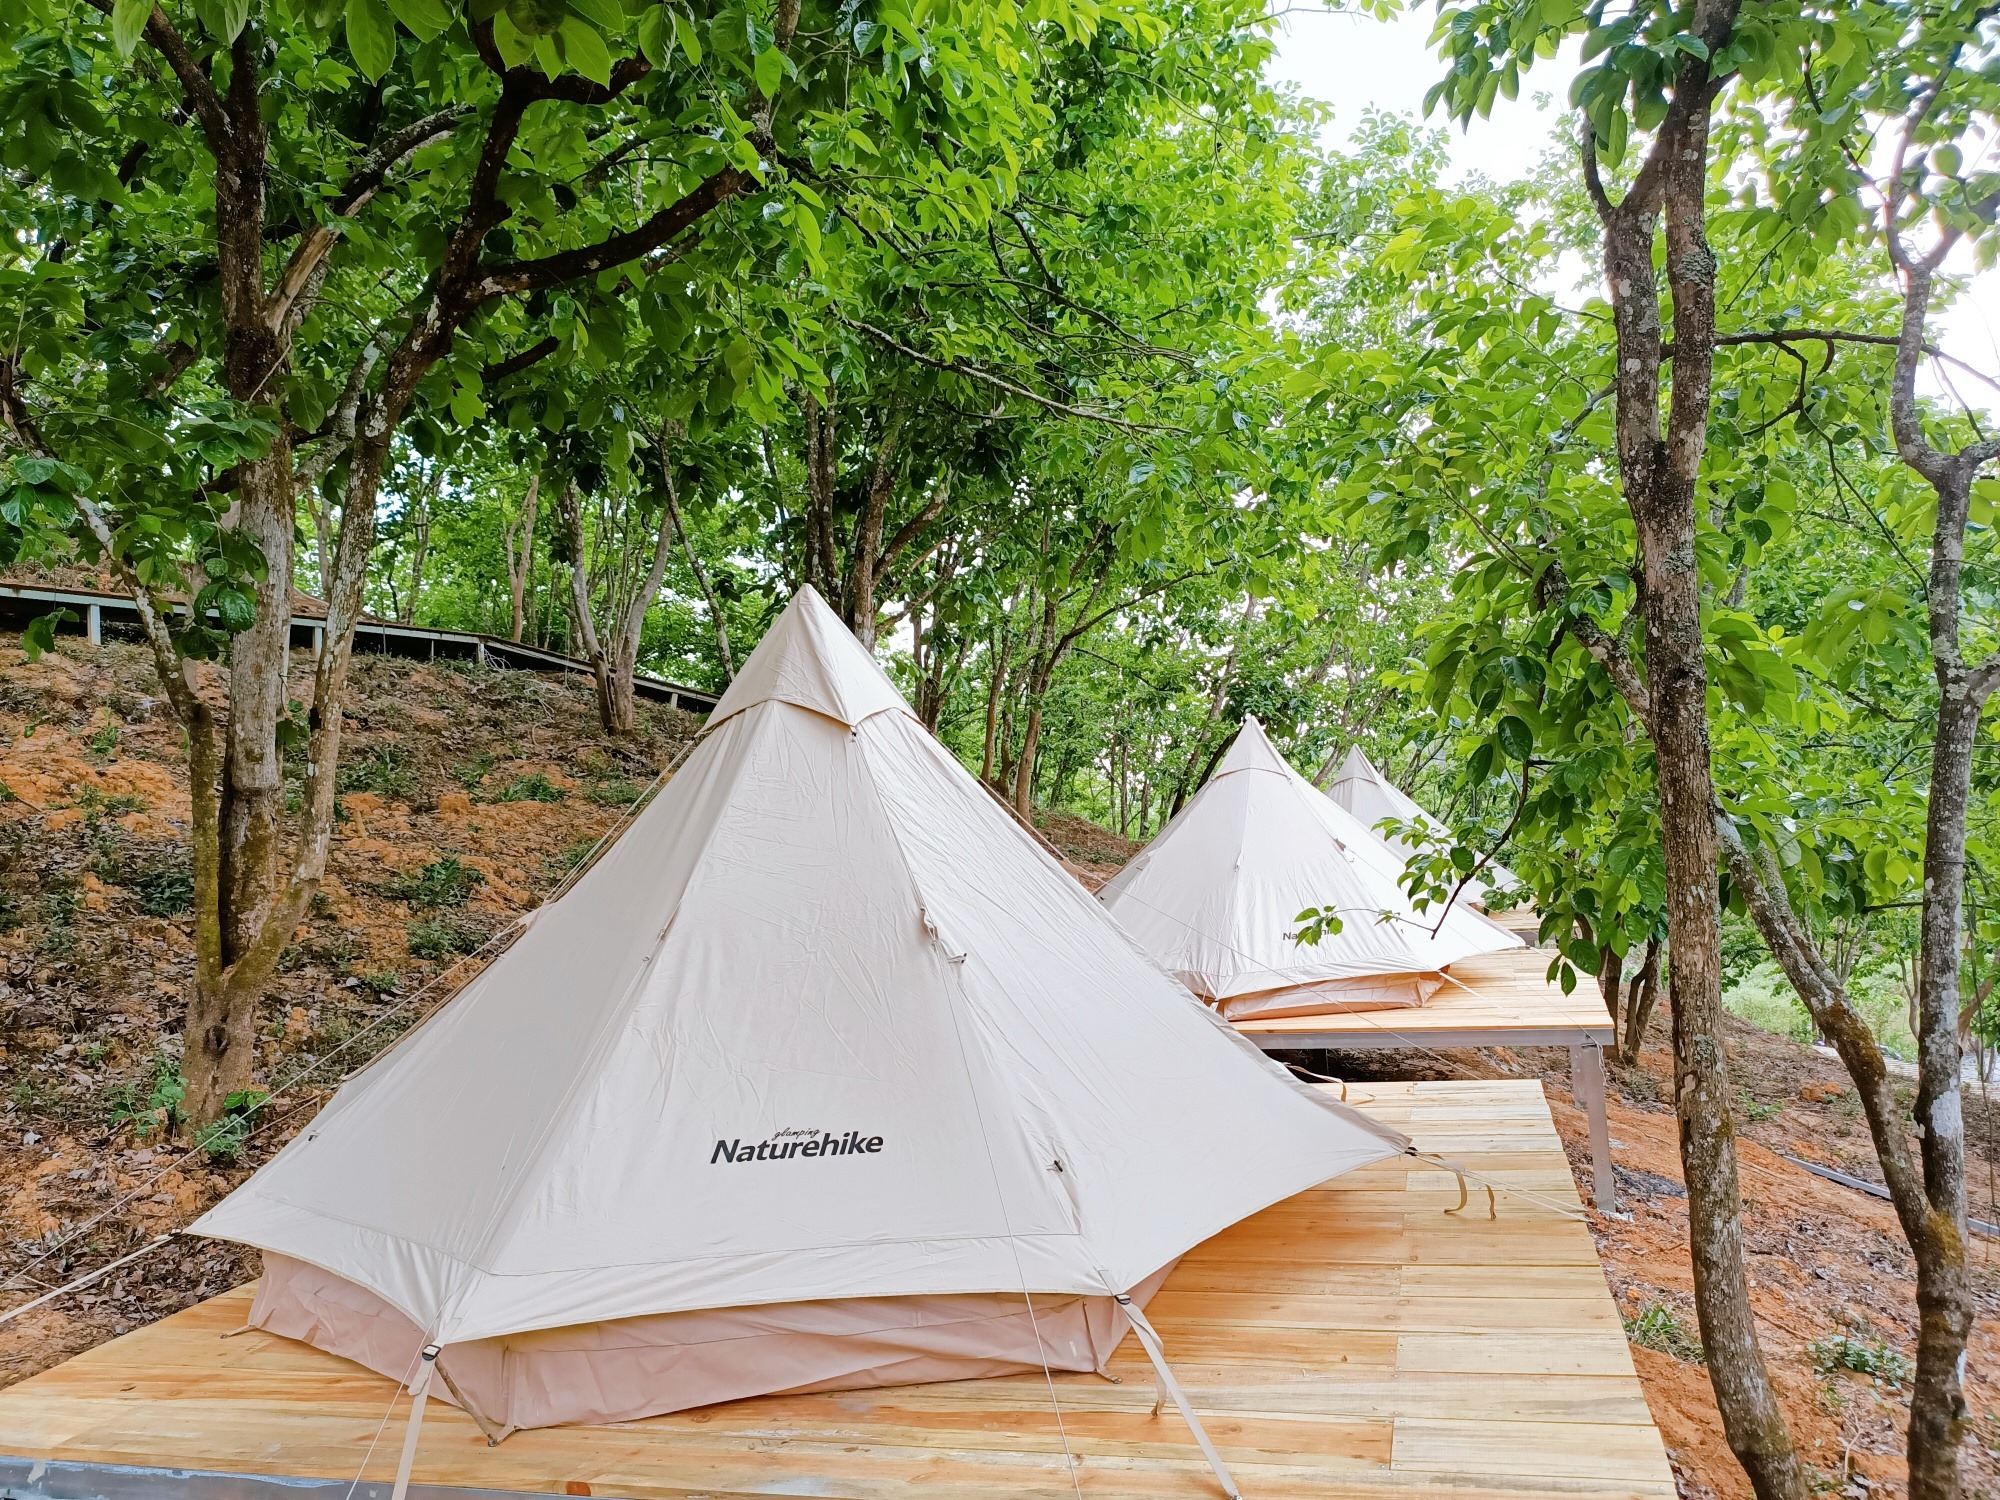 Konoha Đà Lạt- Camping and chill